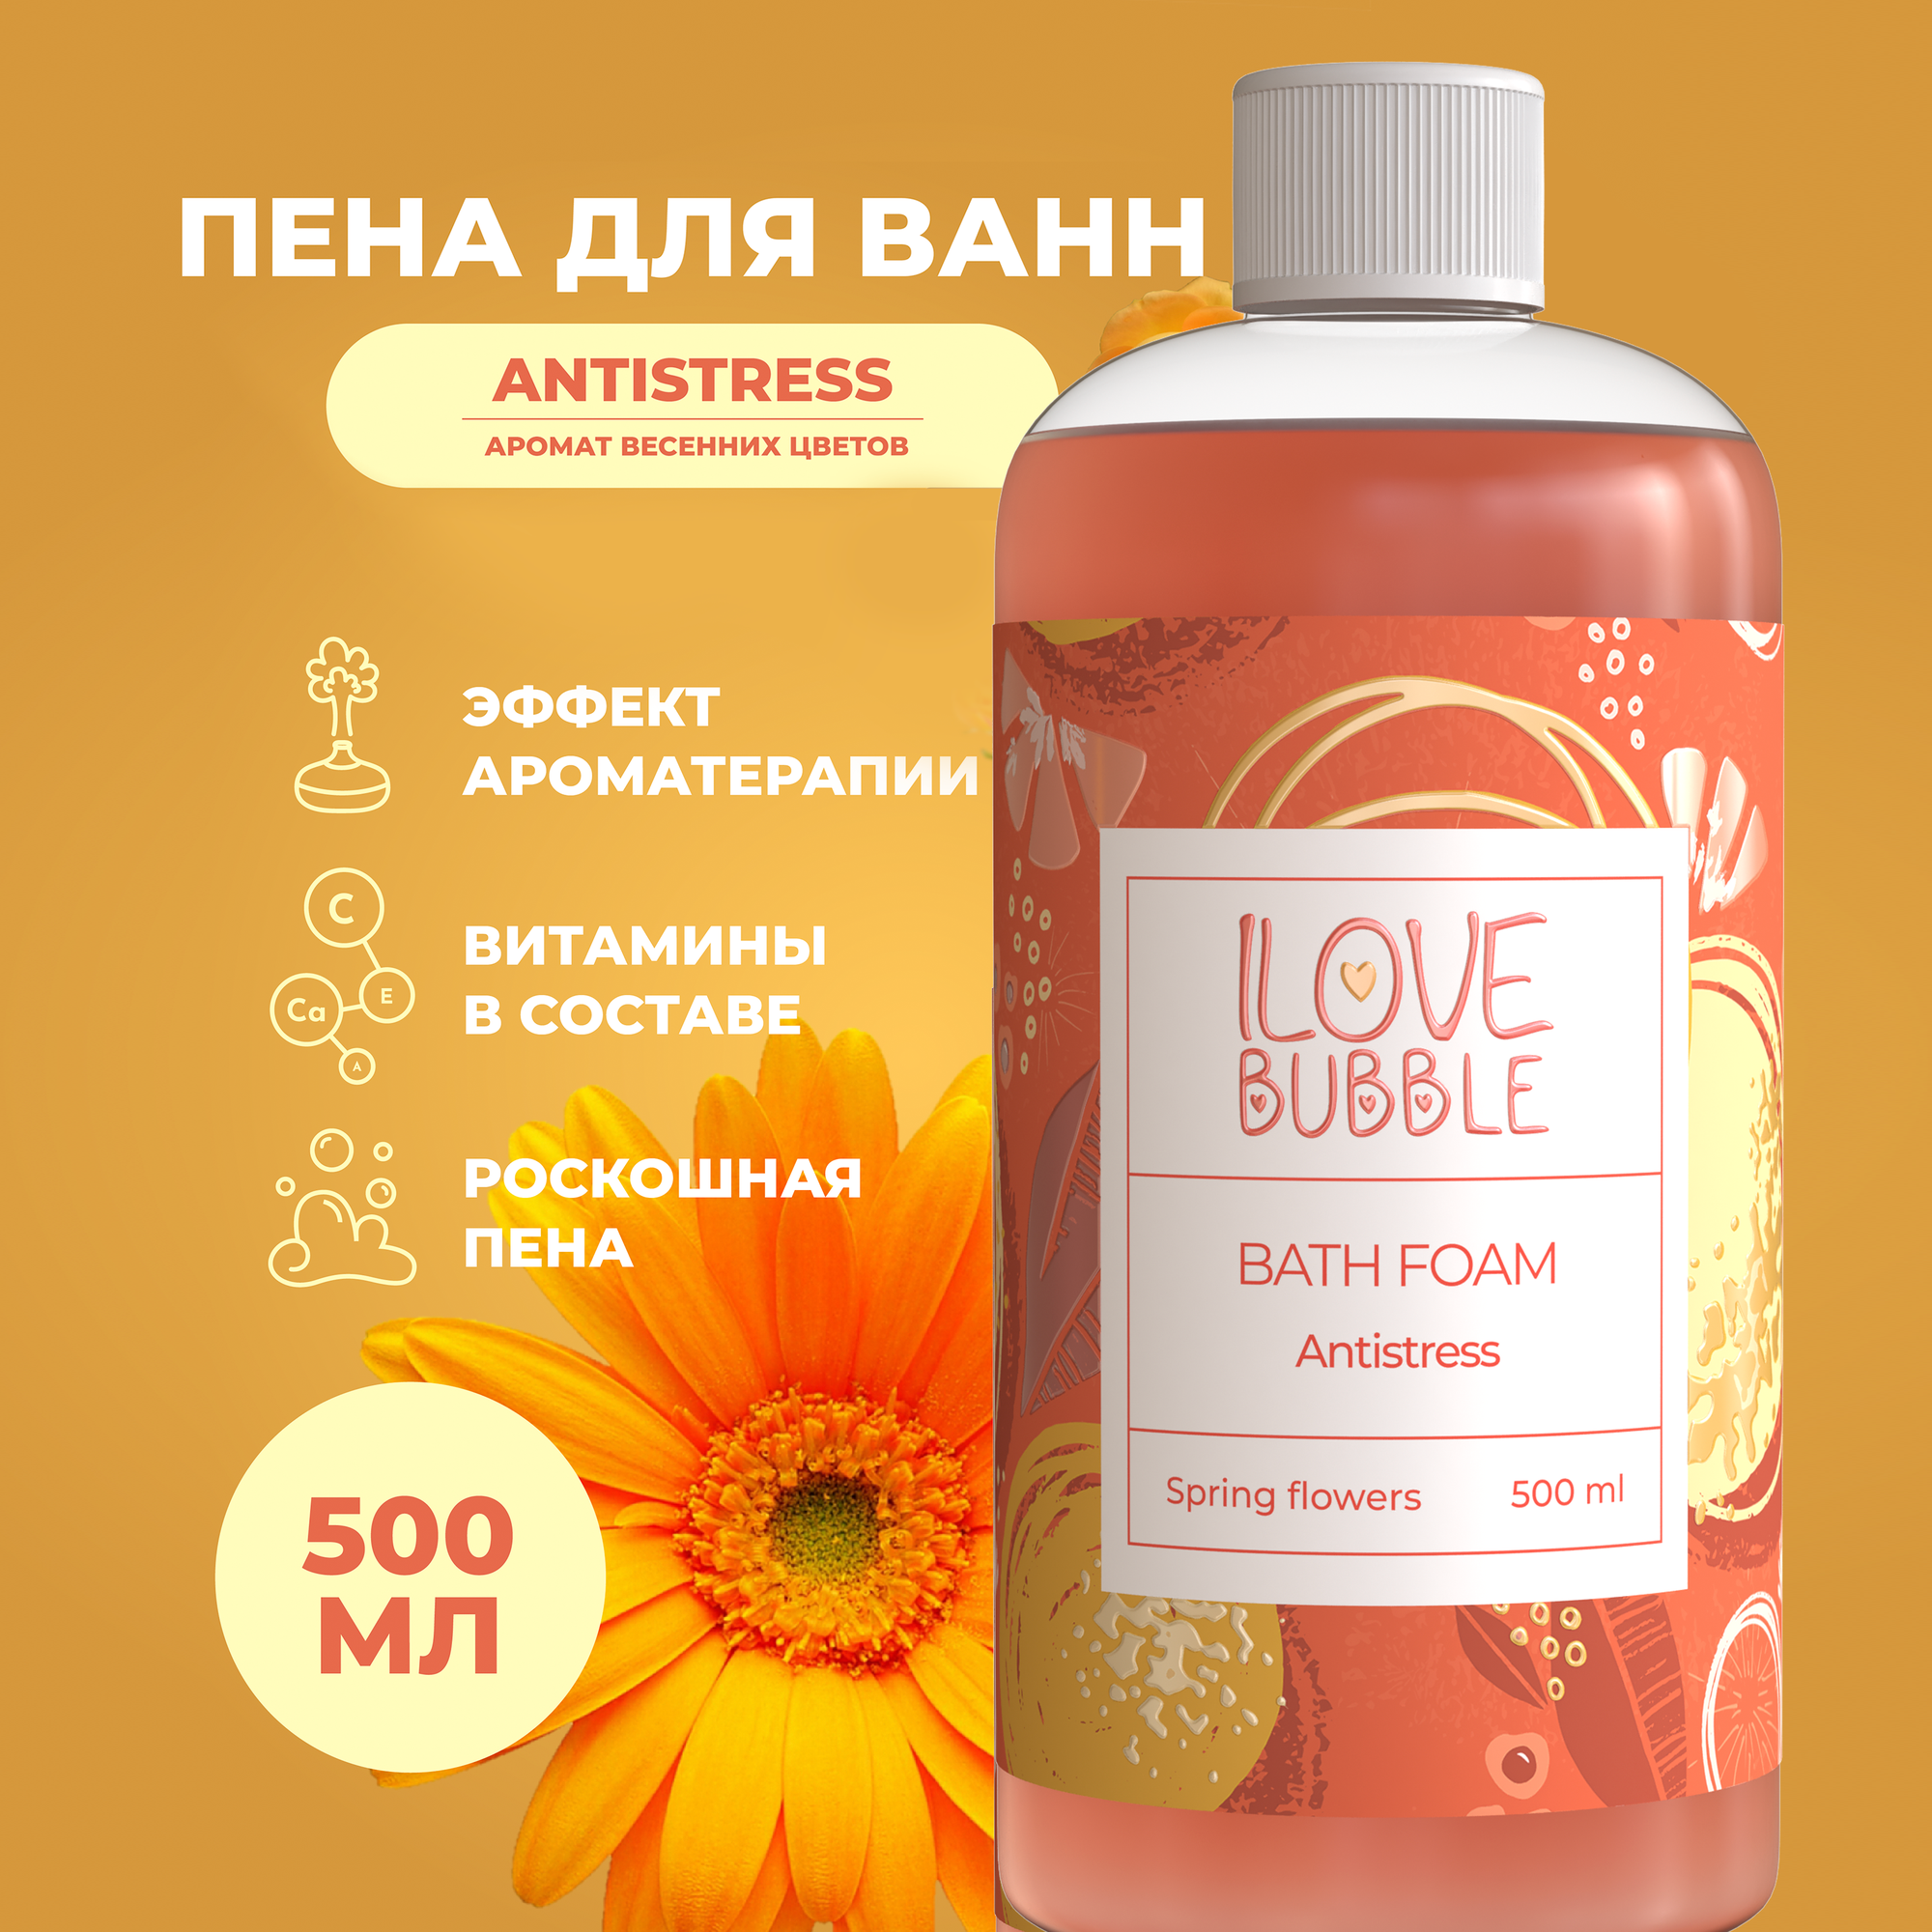 ILOVE mg, Натуральная пена для ванны с цветочным ароматом, увлажнение и расслабление. Объем 500 мл.